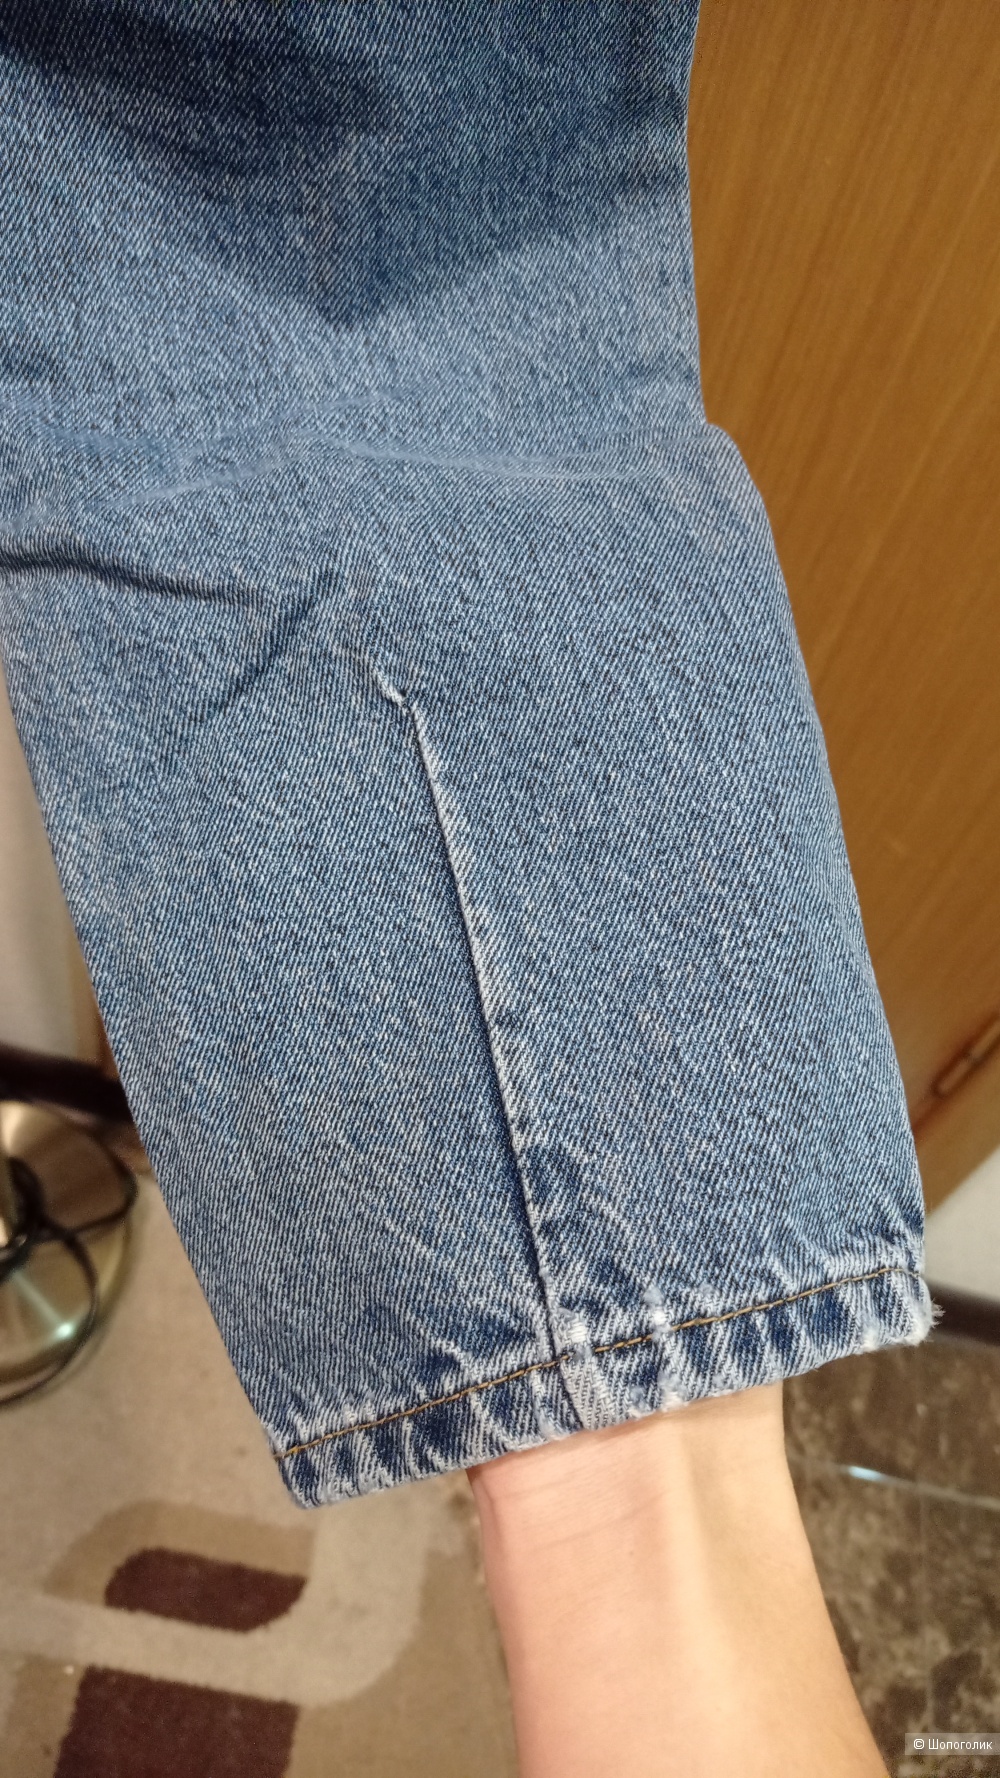 Сет джинсы Noisy may + свитер Zolla размер 42/44